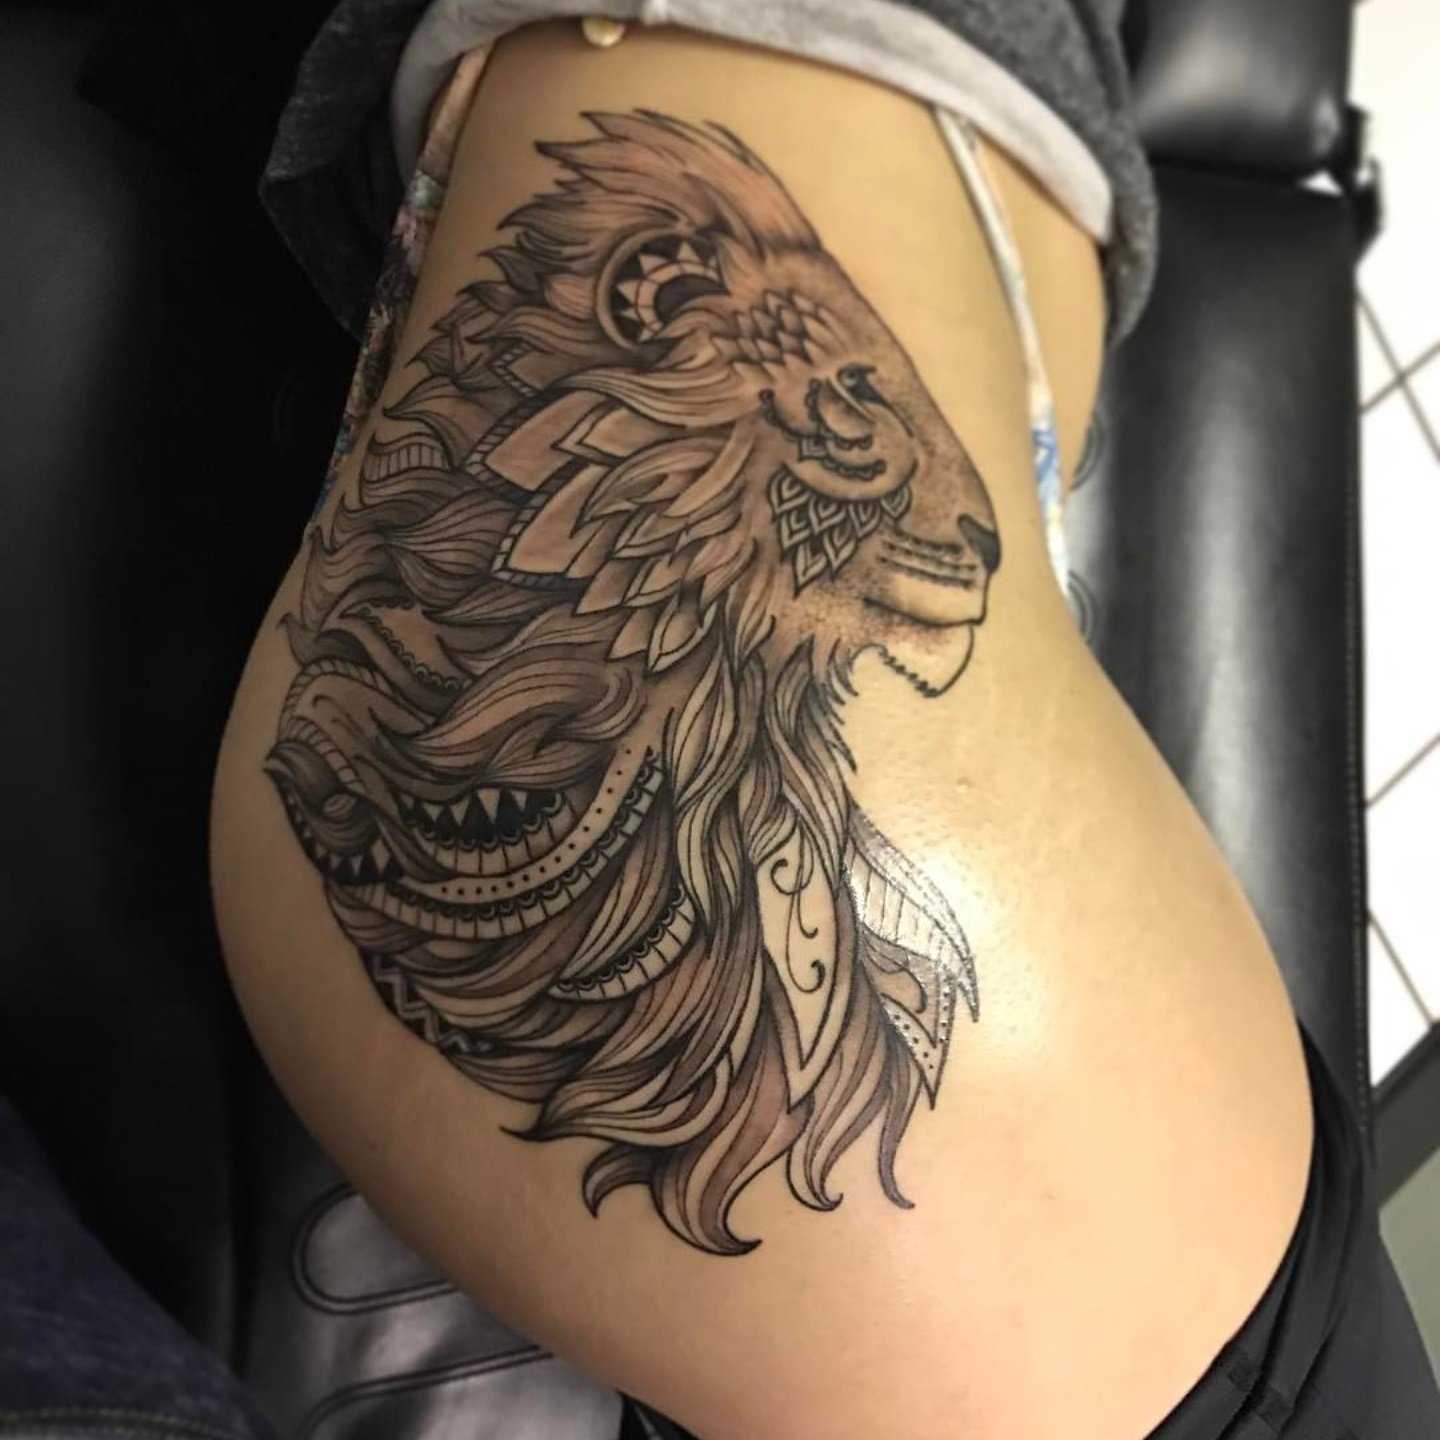 Small Lion Tattoo Best Tattoo Ideas Gallery Hip tattoos 151 Horror tattoos...